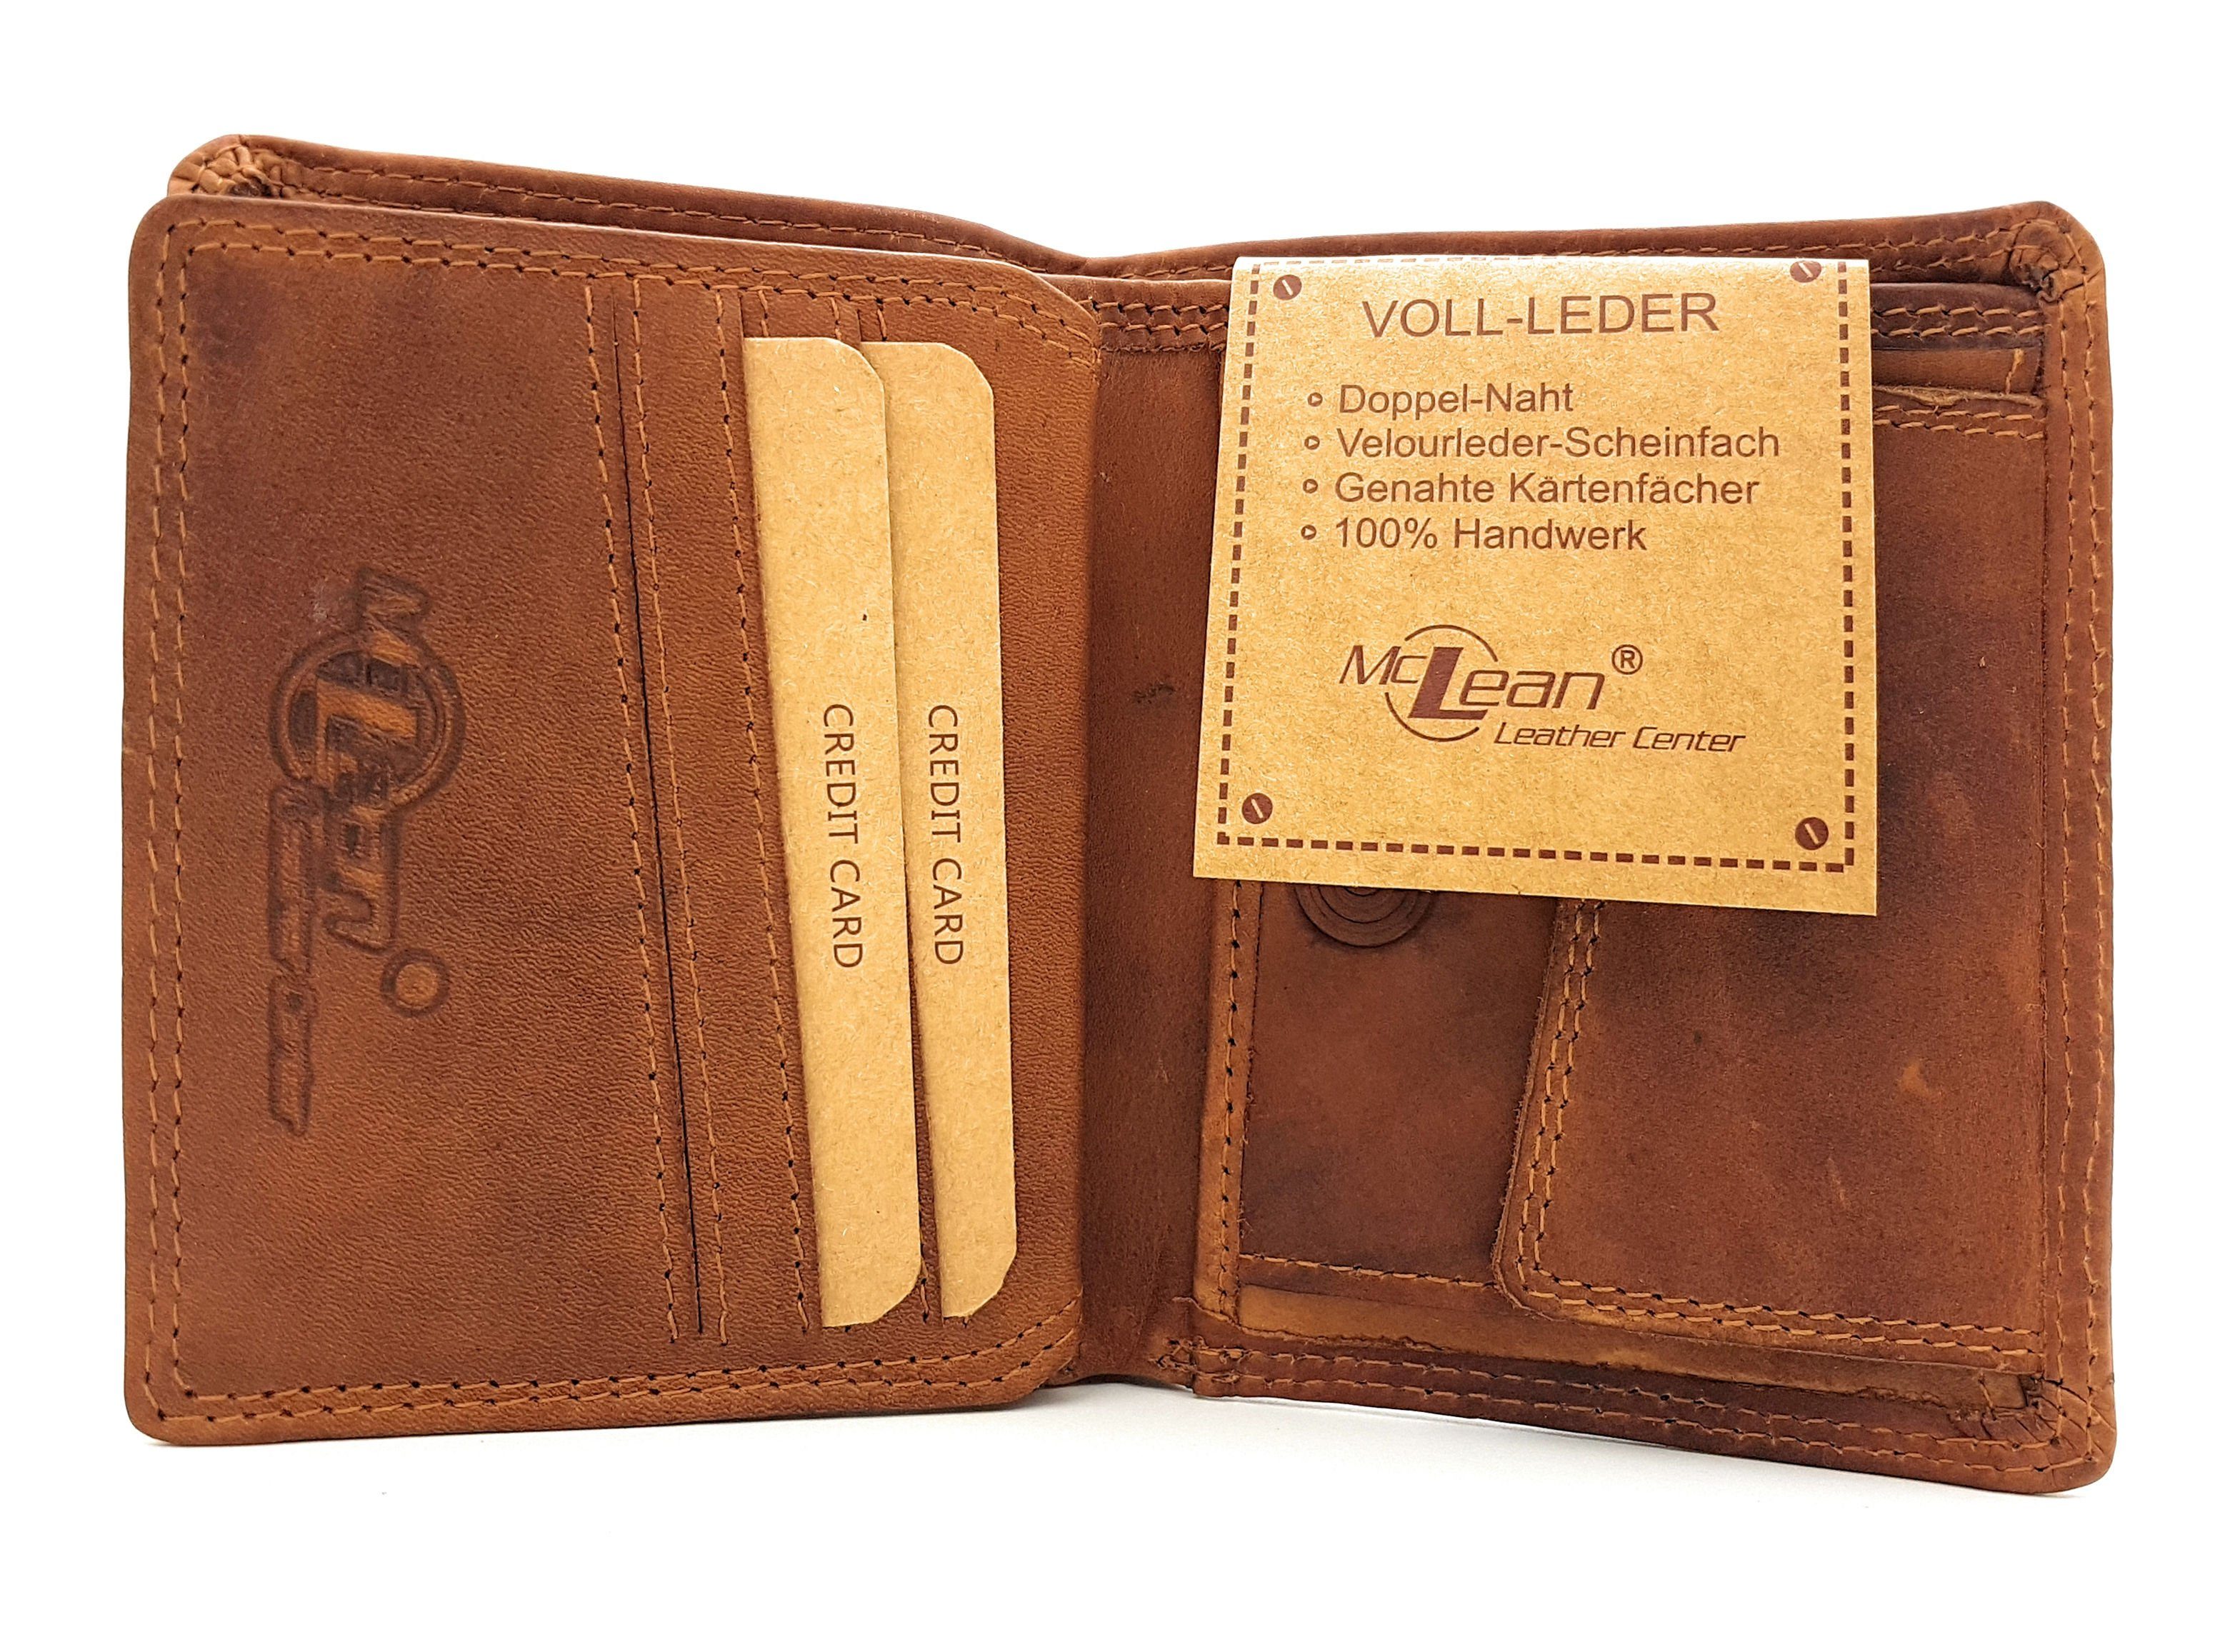 Mini Midi handlich mit echt McLean RFID kompakt und Schutz, Geldbörse Fromat, Leder, Vintage, Volllederausstattung,